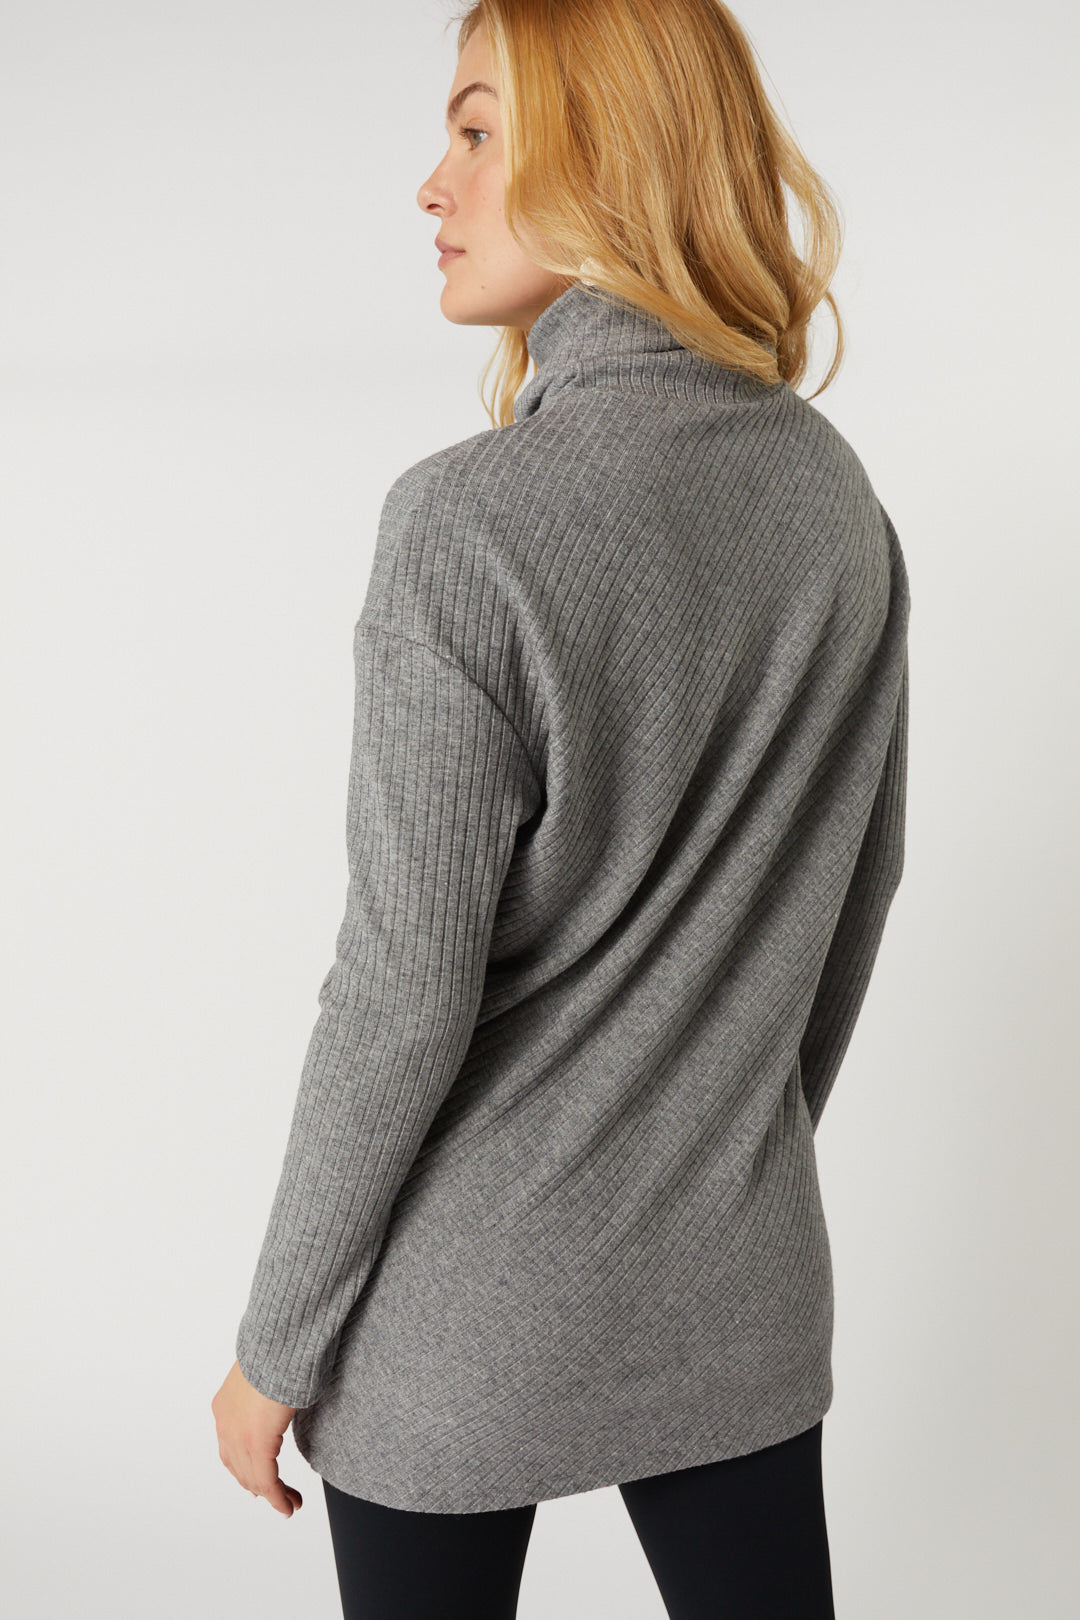 Gray turtleneck sweater | Beatrice